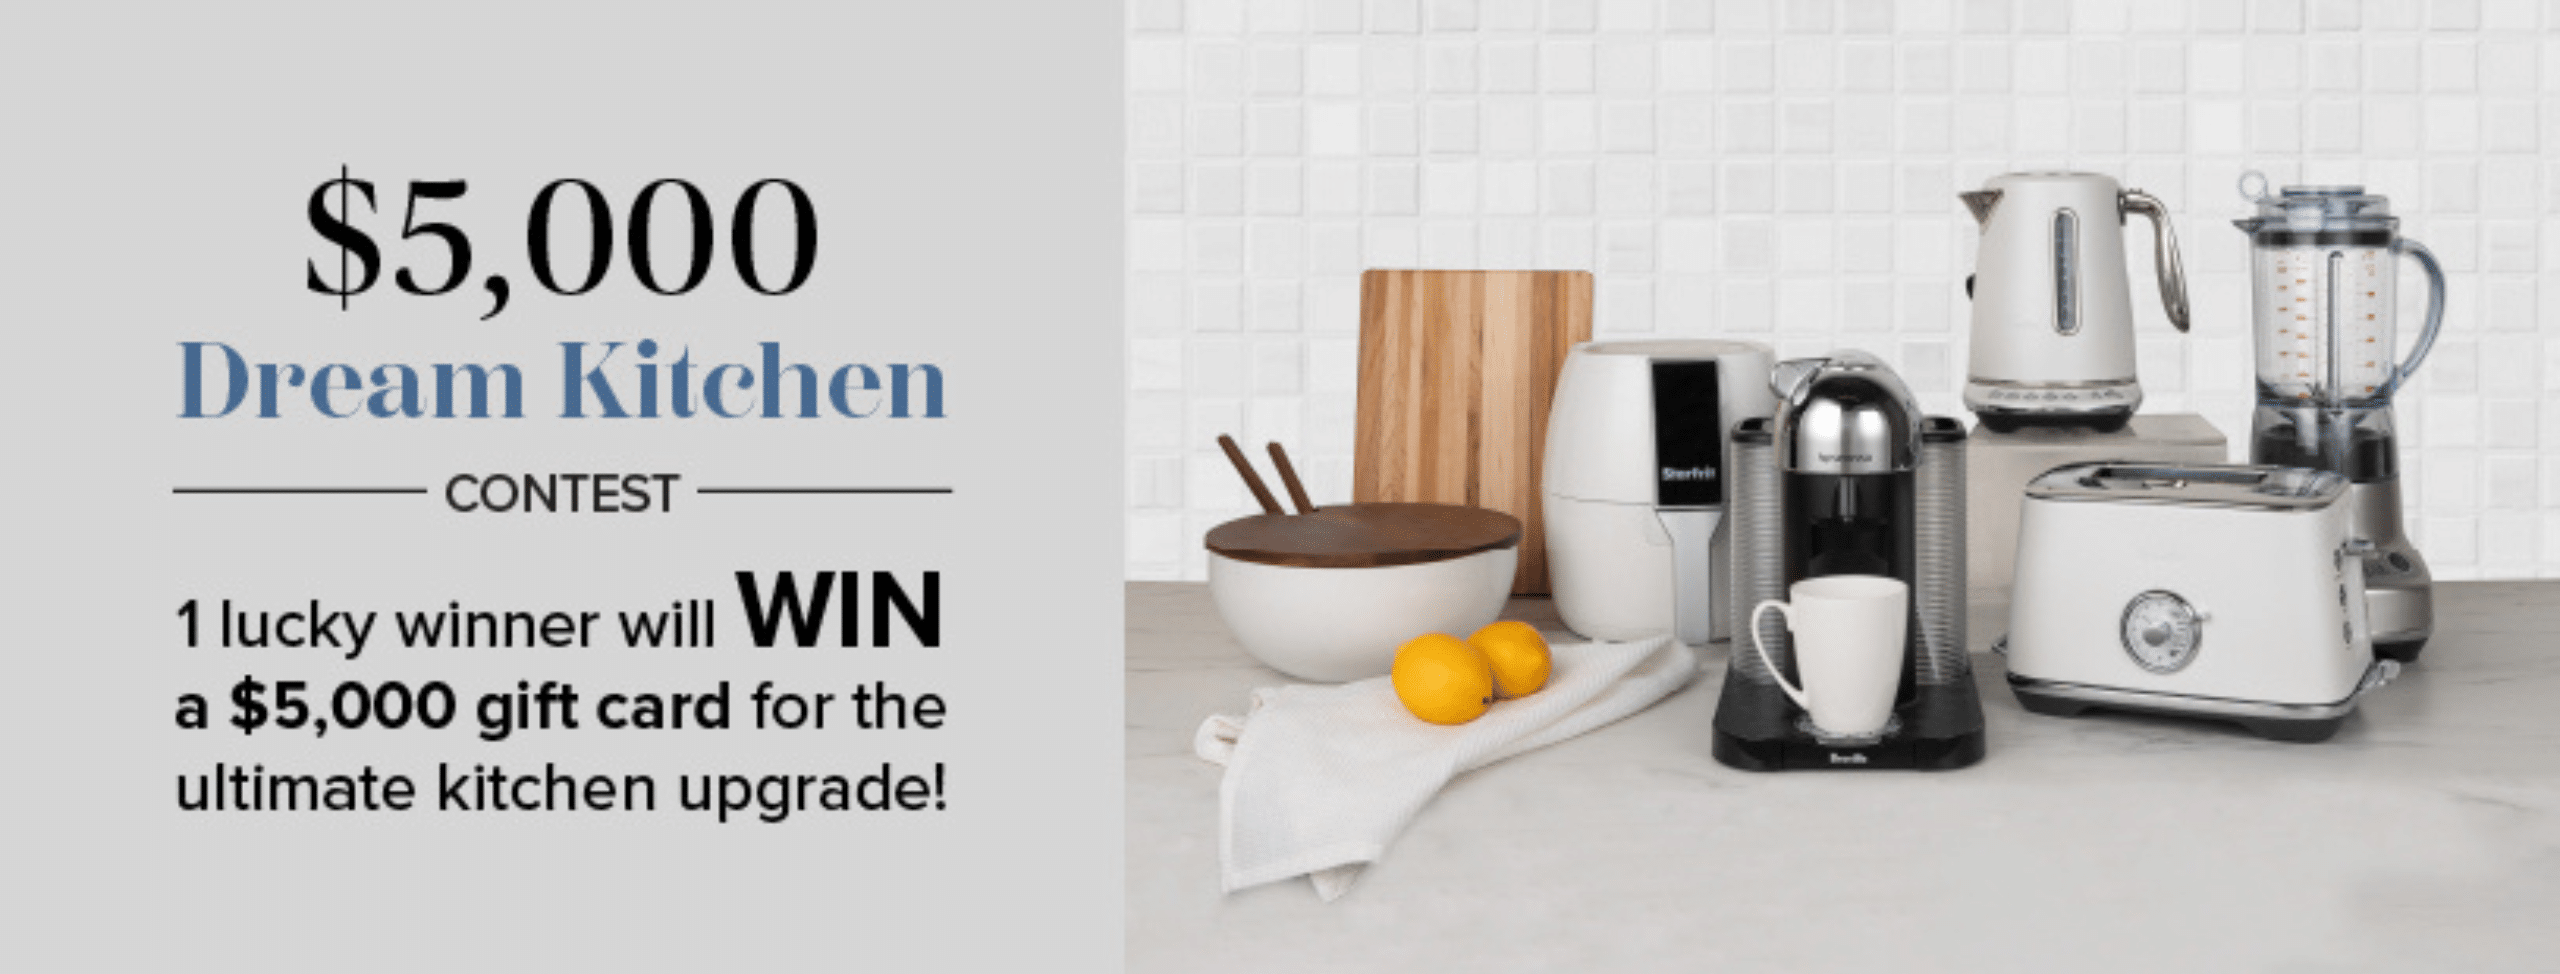 Win a 5000 Dream Kitchen 1